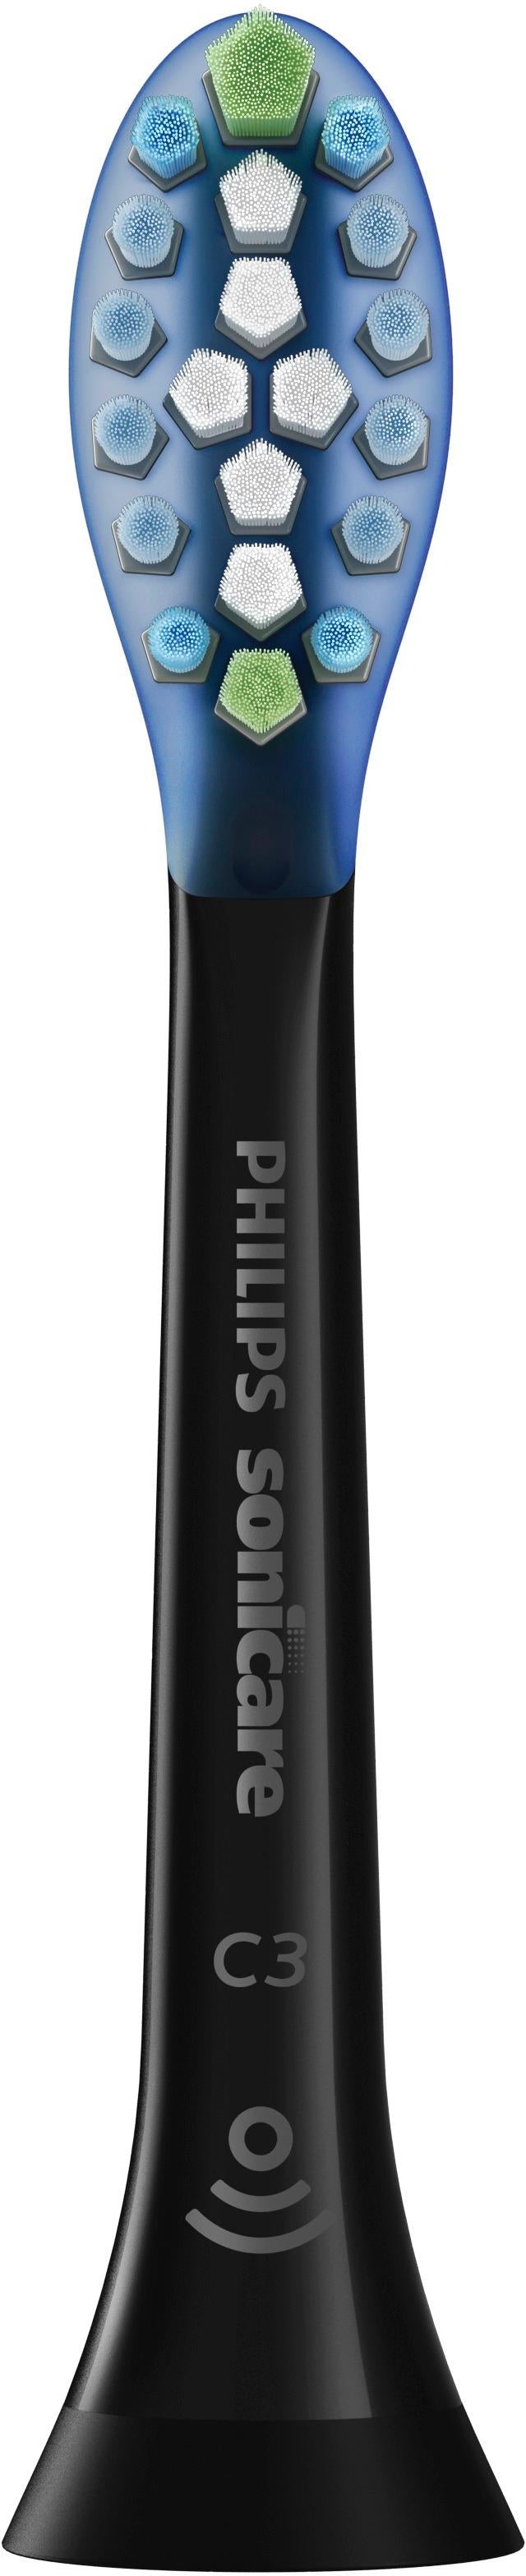 Philips Sonicare - Premium Plaque Control Brush Heads (2-Pack) - Black_6